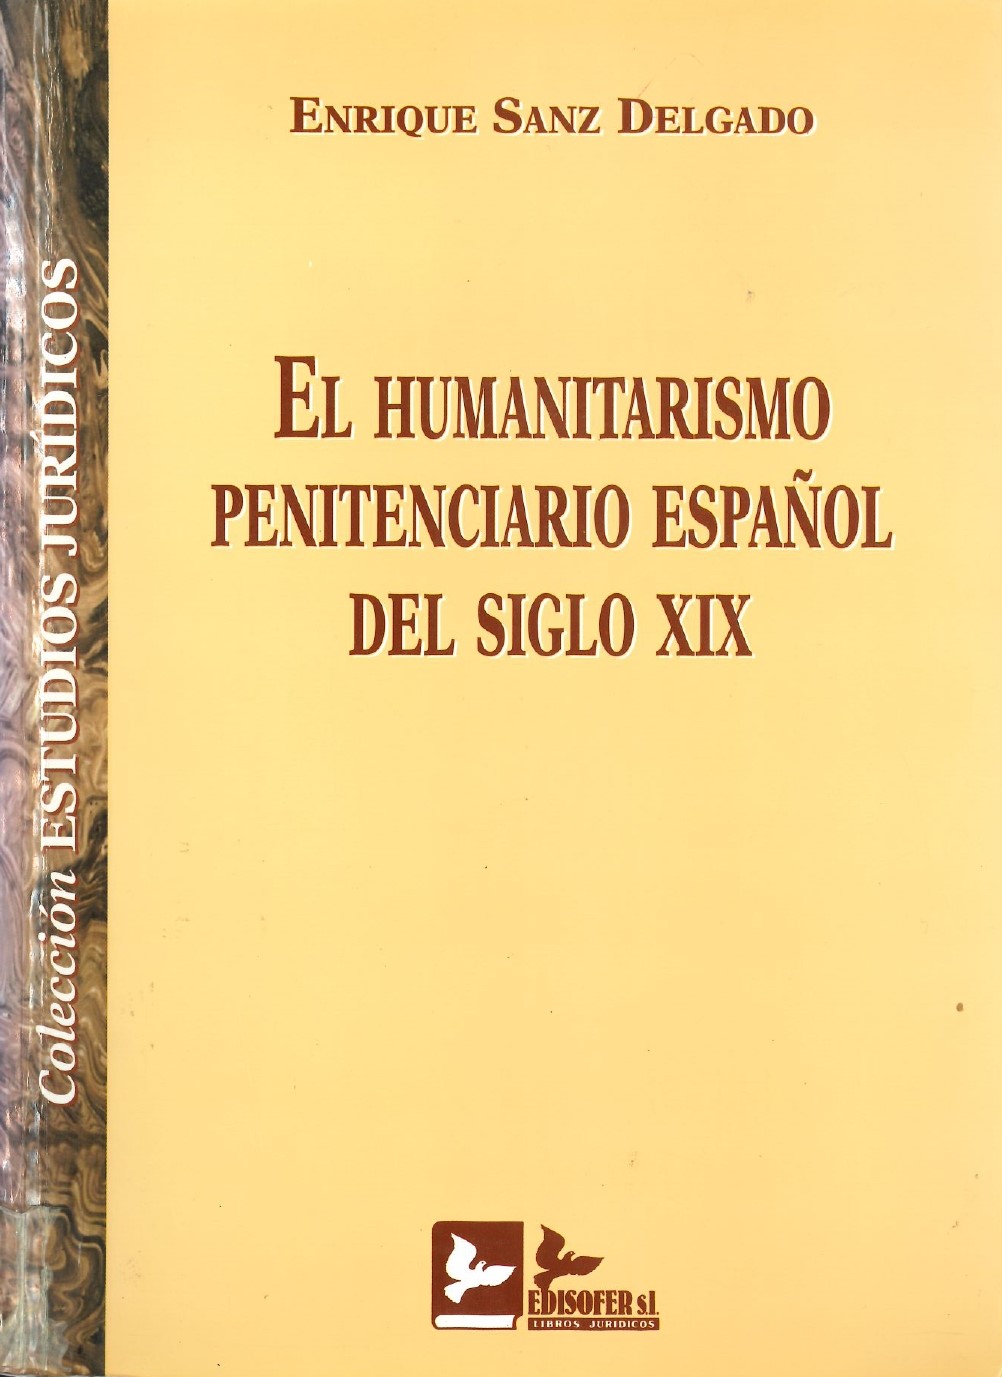 Imagen de portada del libro El humanitarismo penitenciario español del siglo XIX